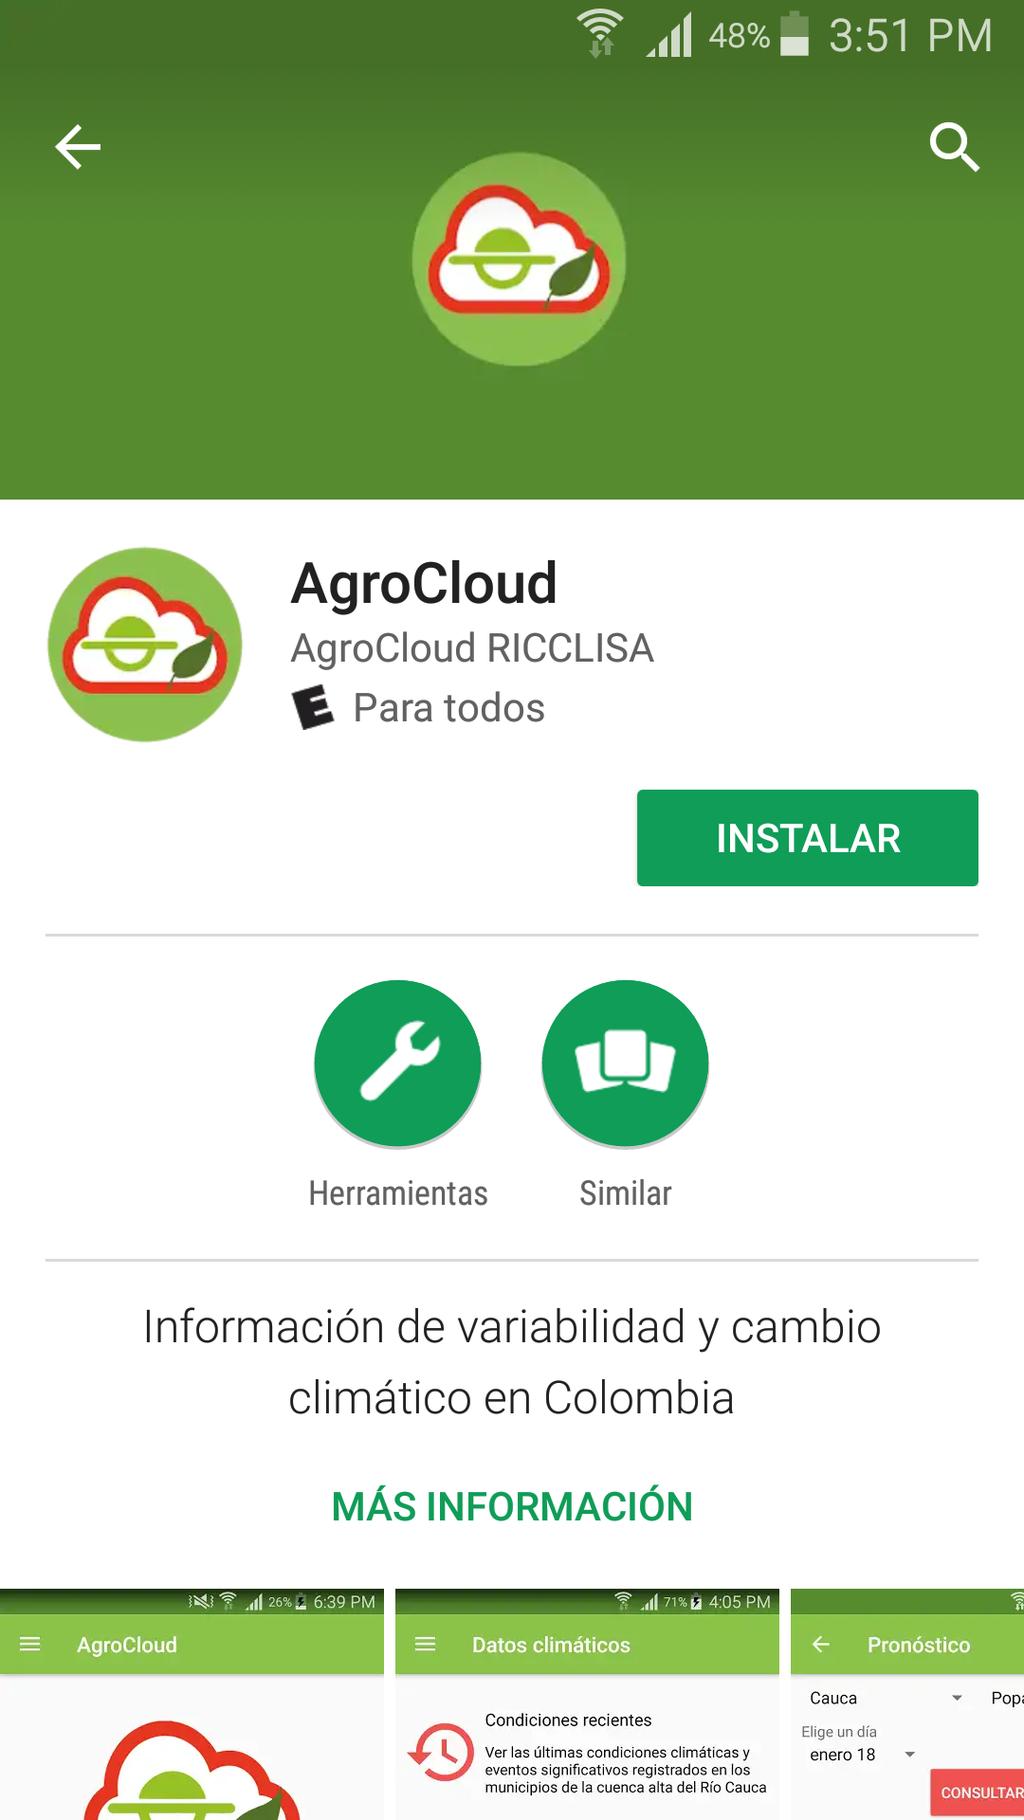 1. AGROCLOUD Aplicación móvil para dispositivos móviles Android para el seguimiento de variables agroclimáticas en la cuenca alta del río Cauca y soporte a la toma de decisiones del sector cafetero